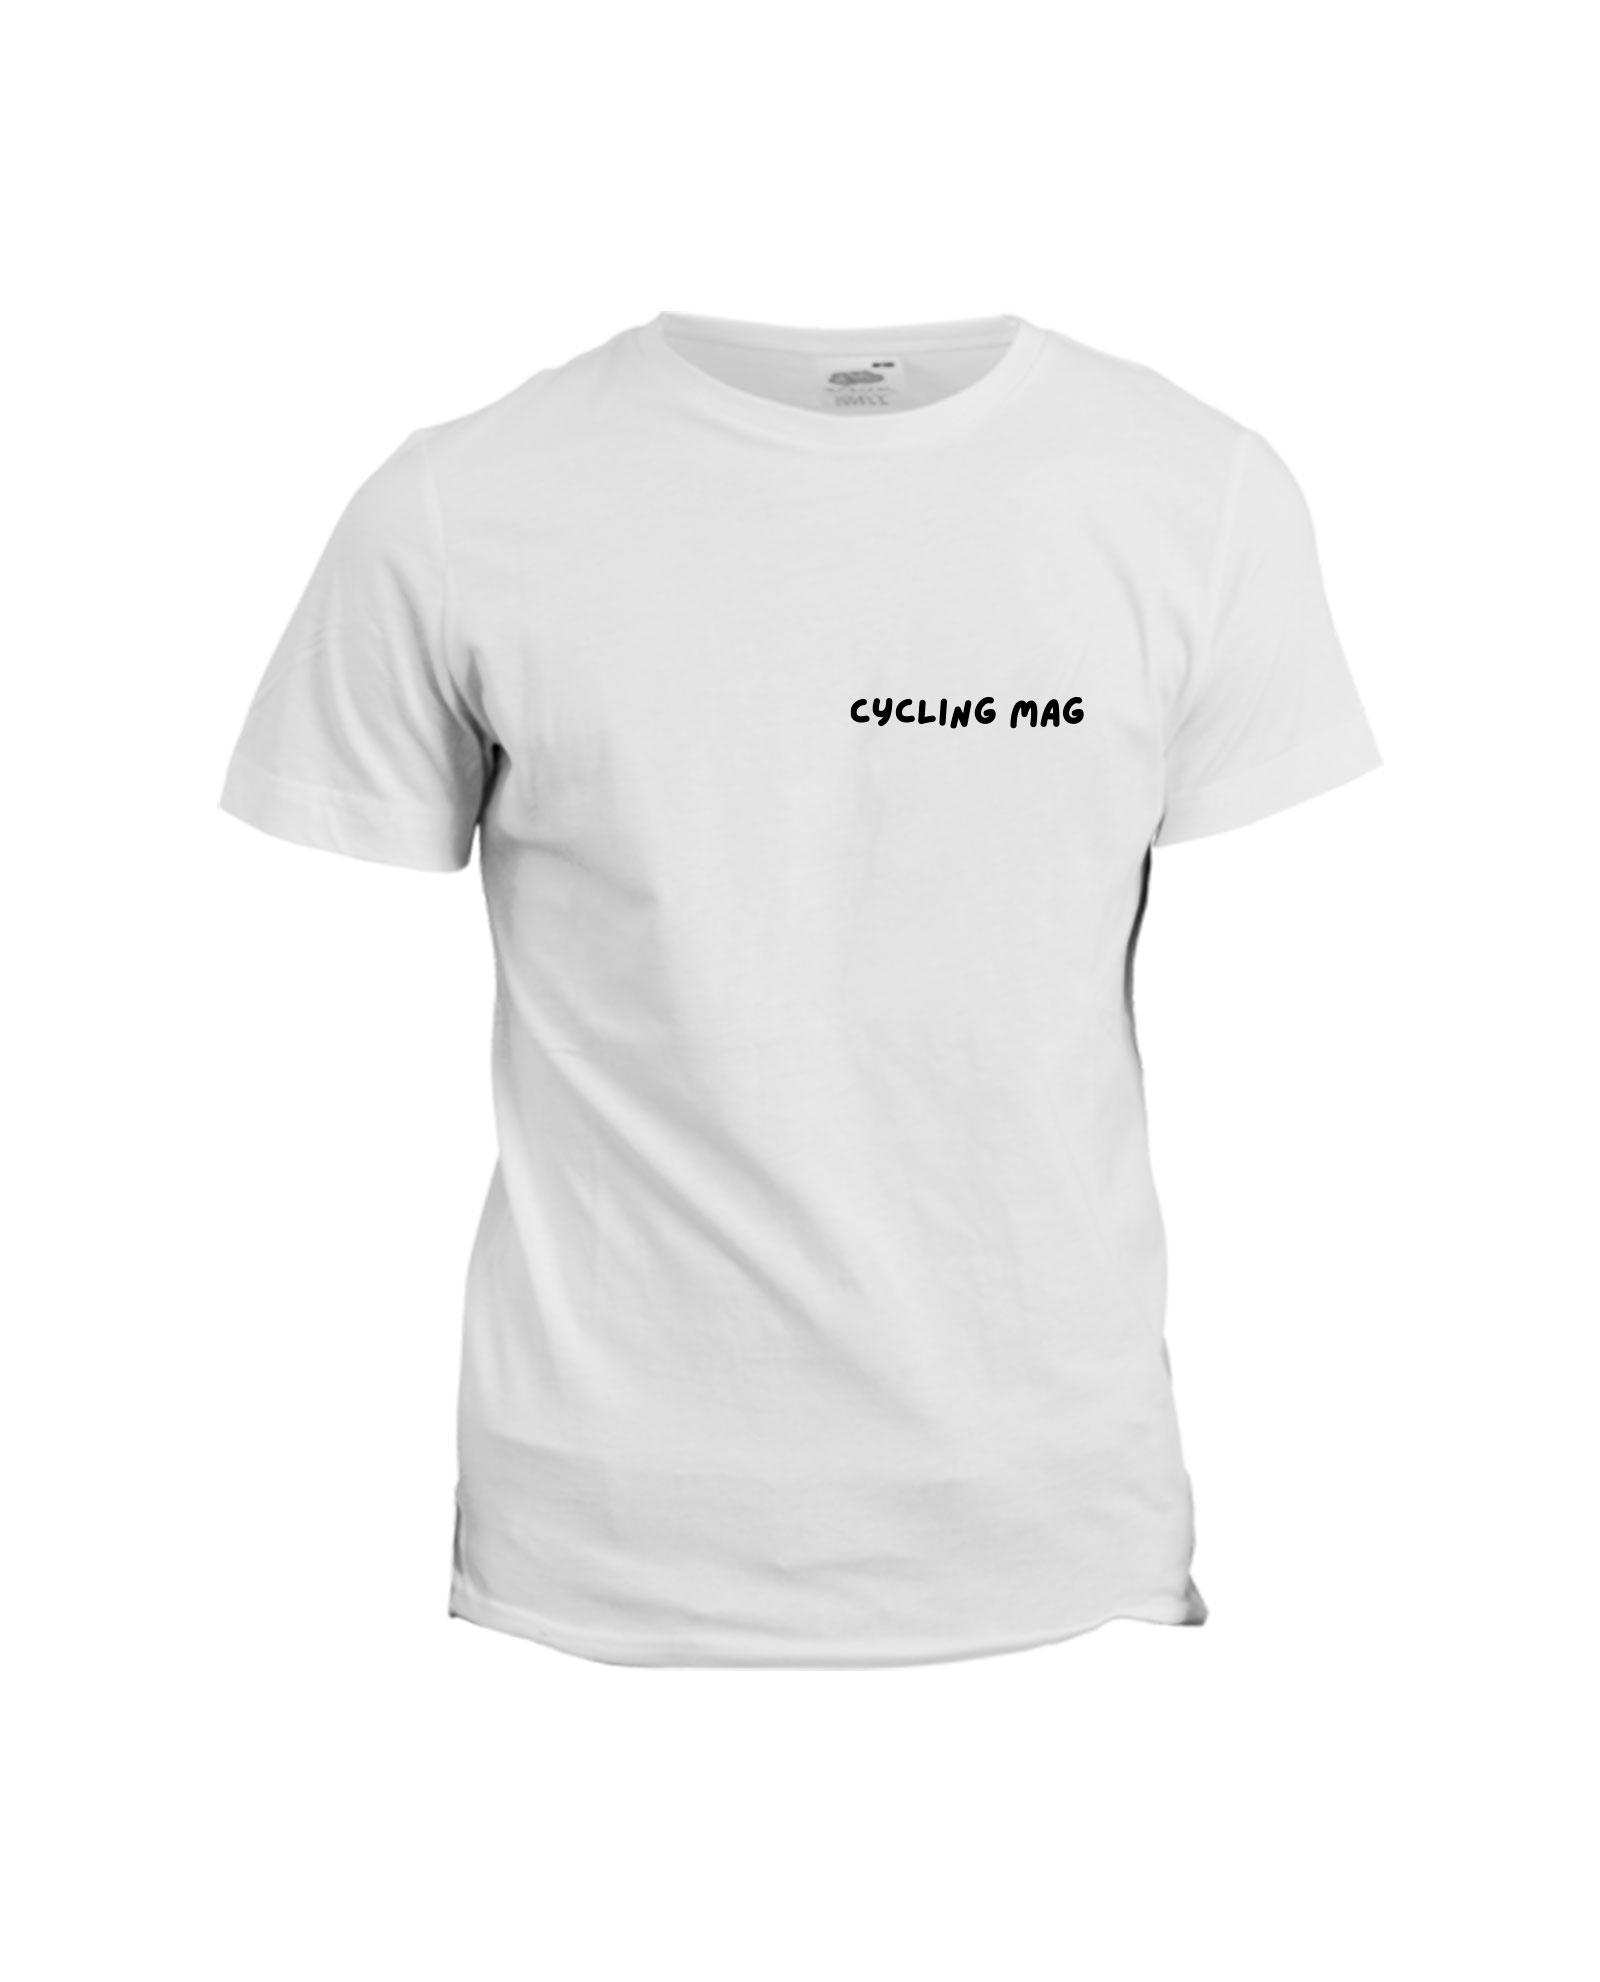 la-ligne-shop-t-shirt-blanc-cycling-mag